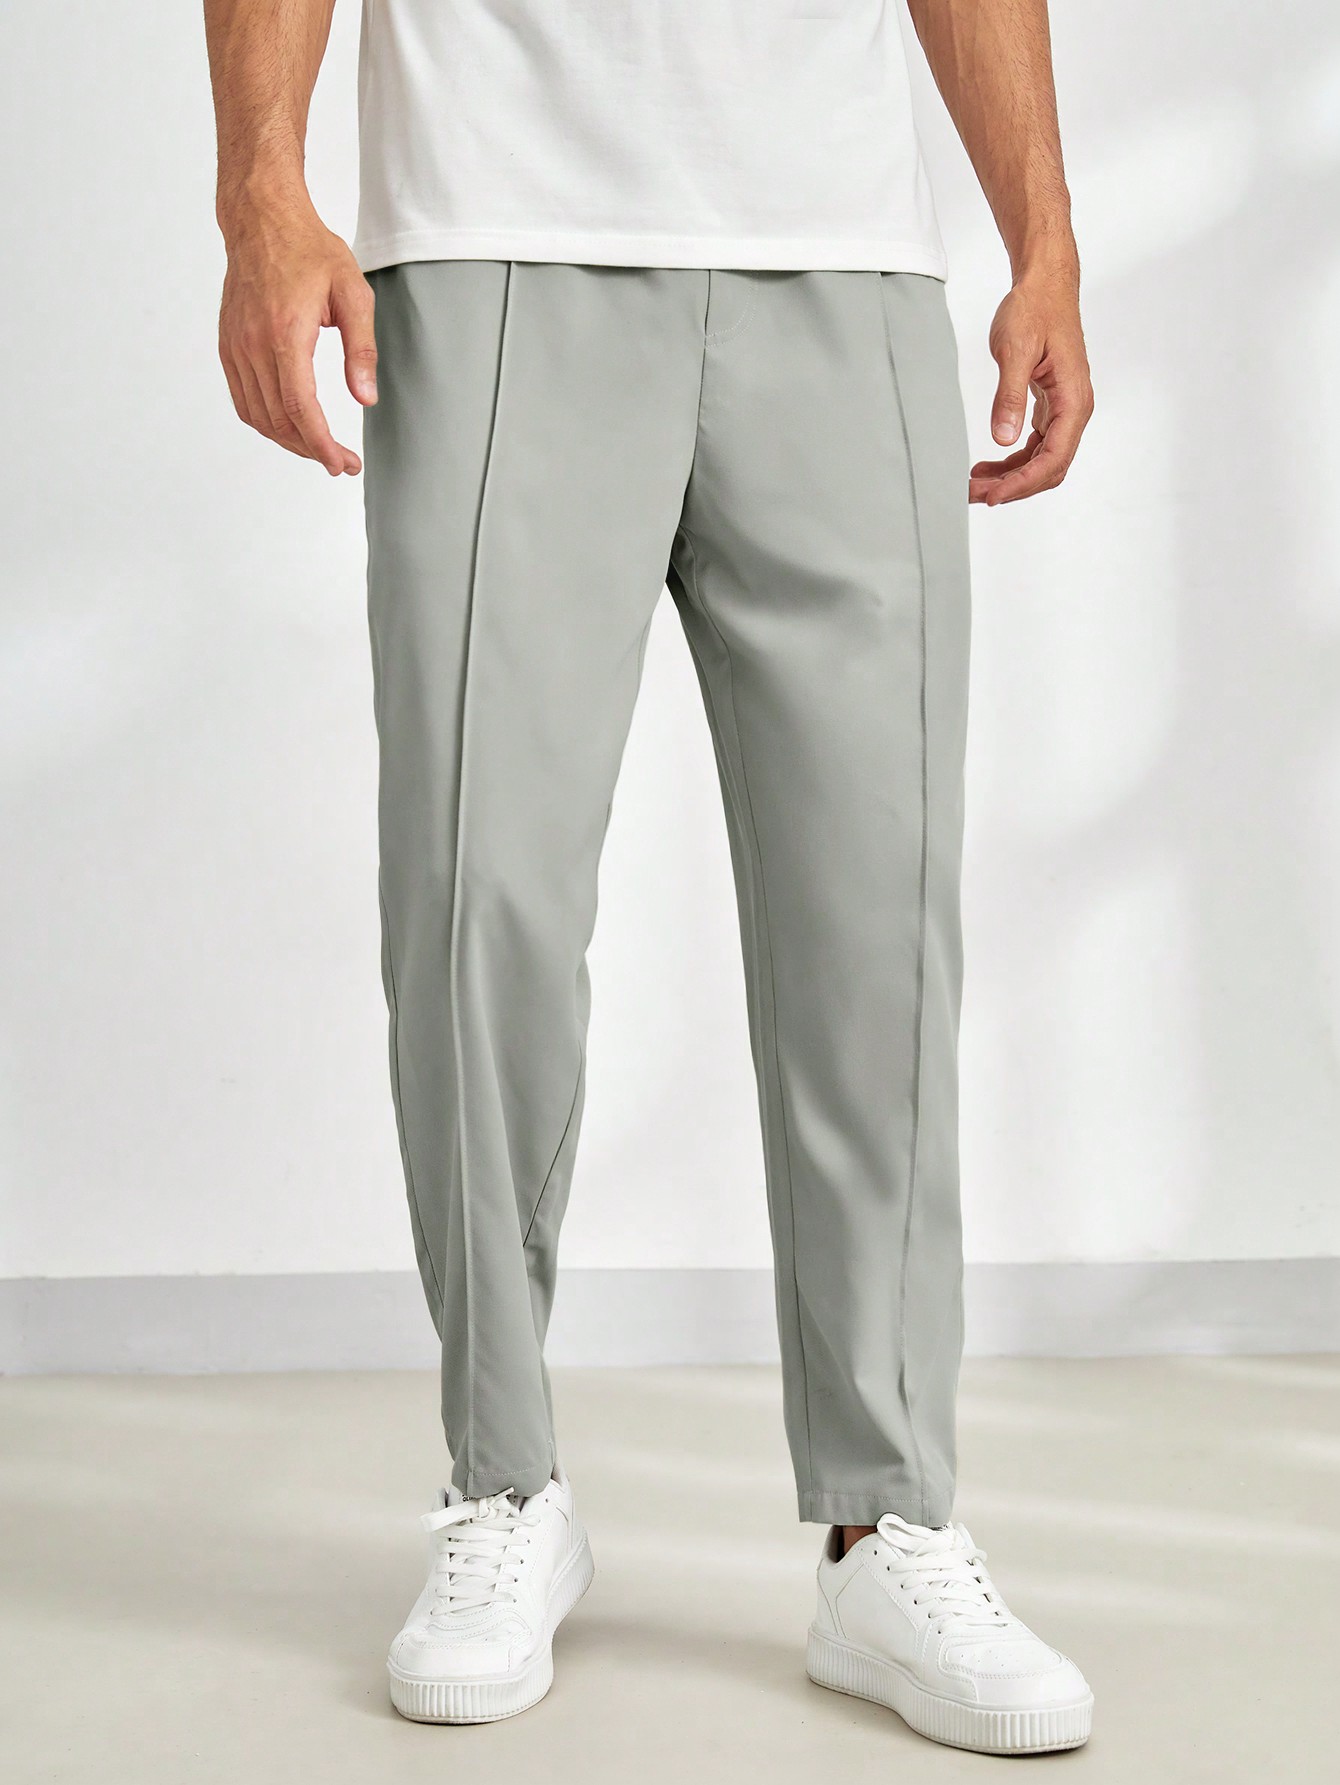 Мужские однотонные повседневные зауженные брюки Manfinity Homme с эластичной резинкой на талии, абрикос цена и фото